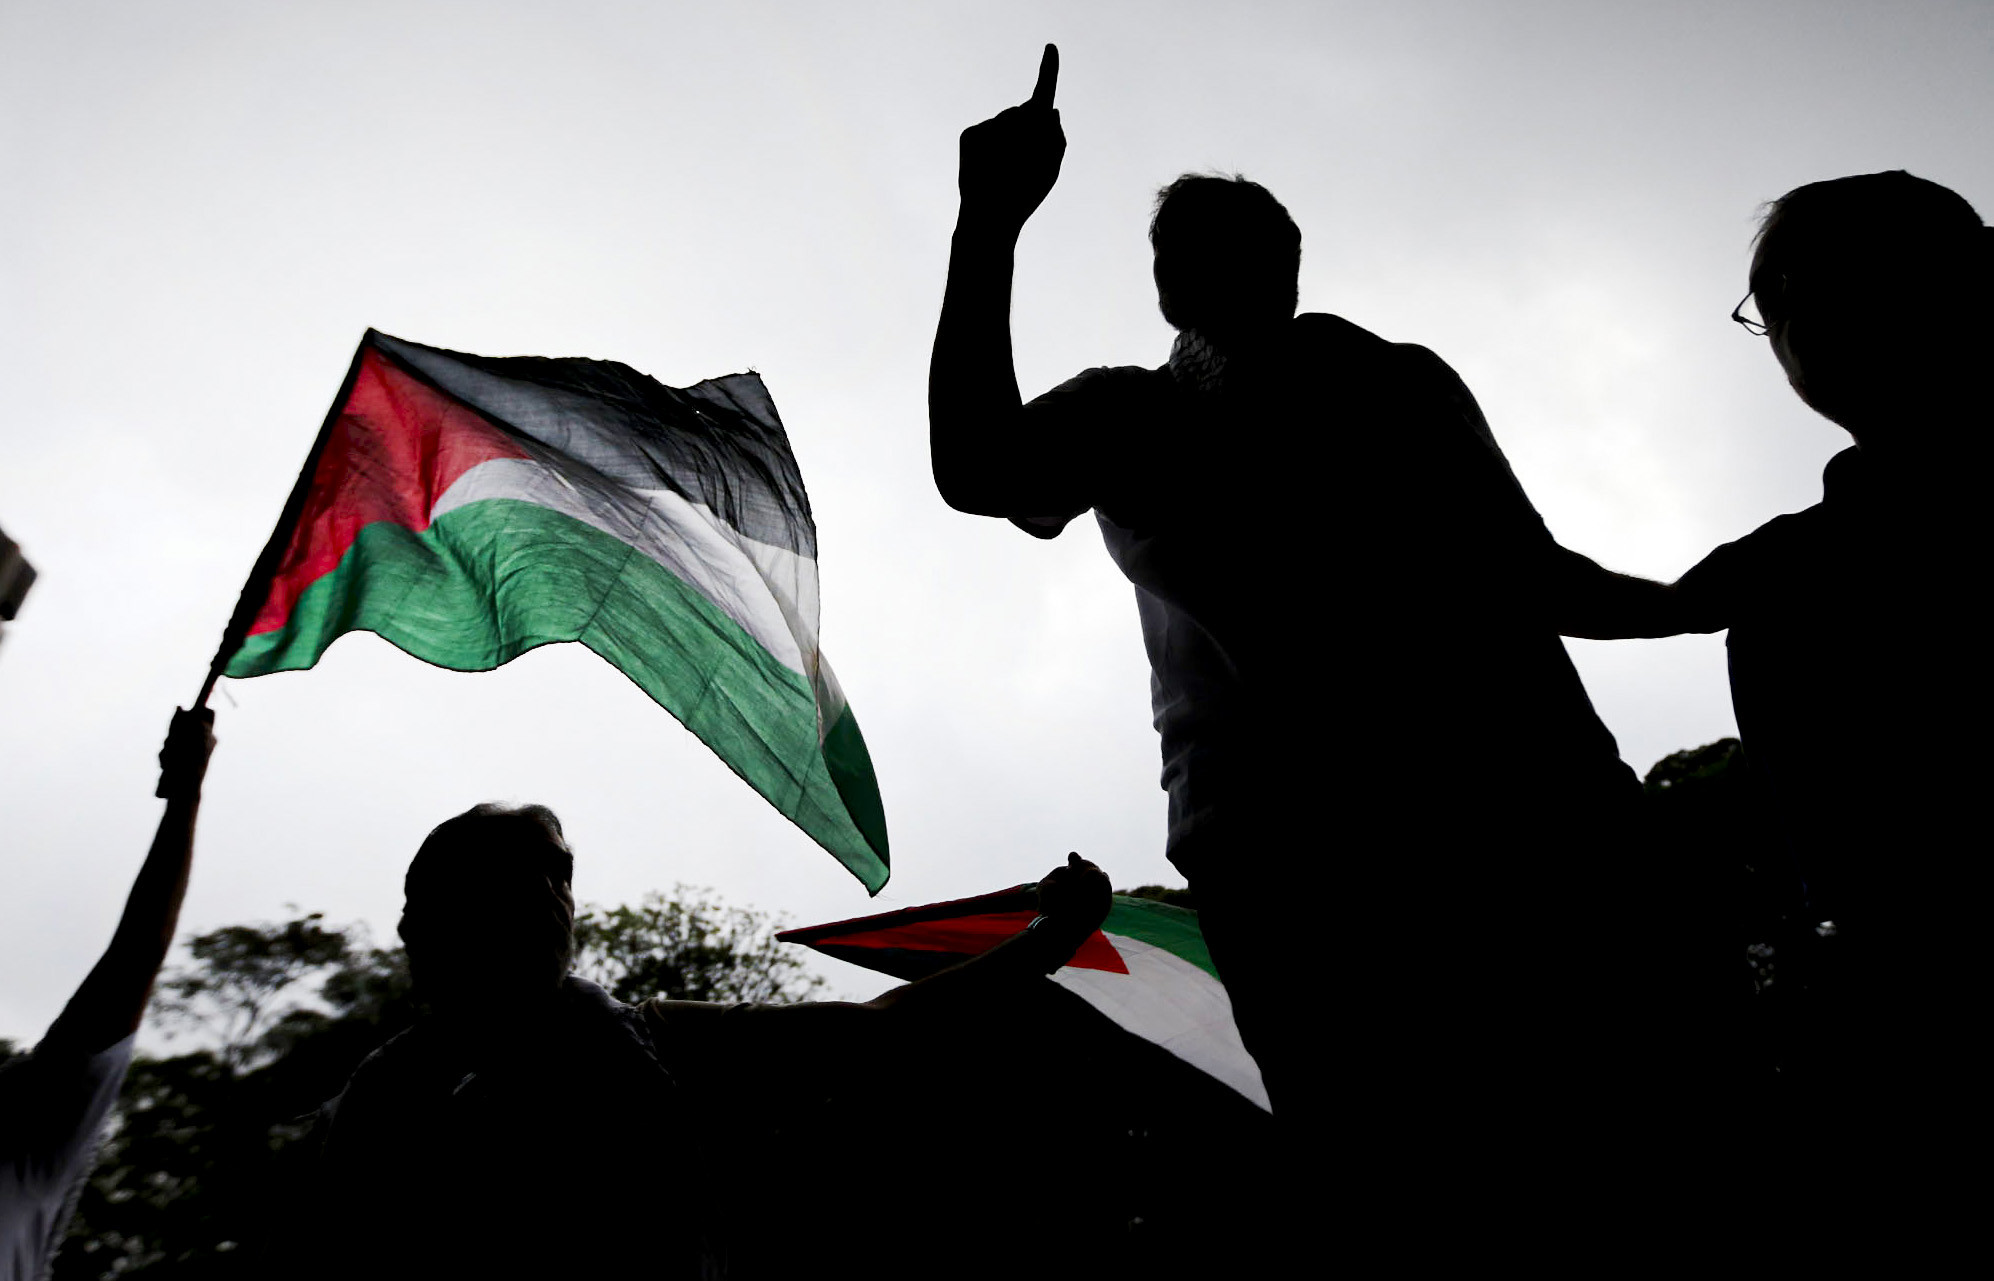 A Academia tem posicionamento sobre o genocídio palestino?